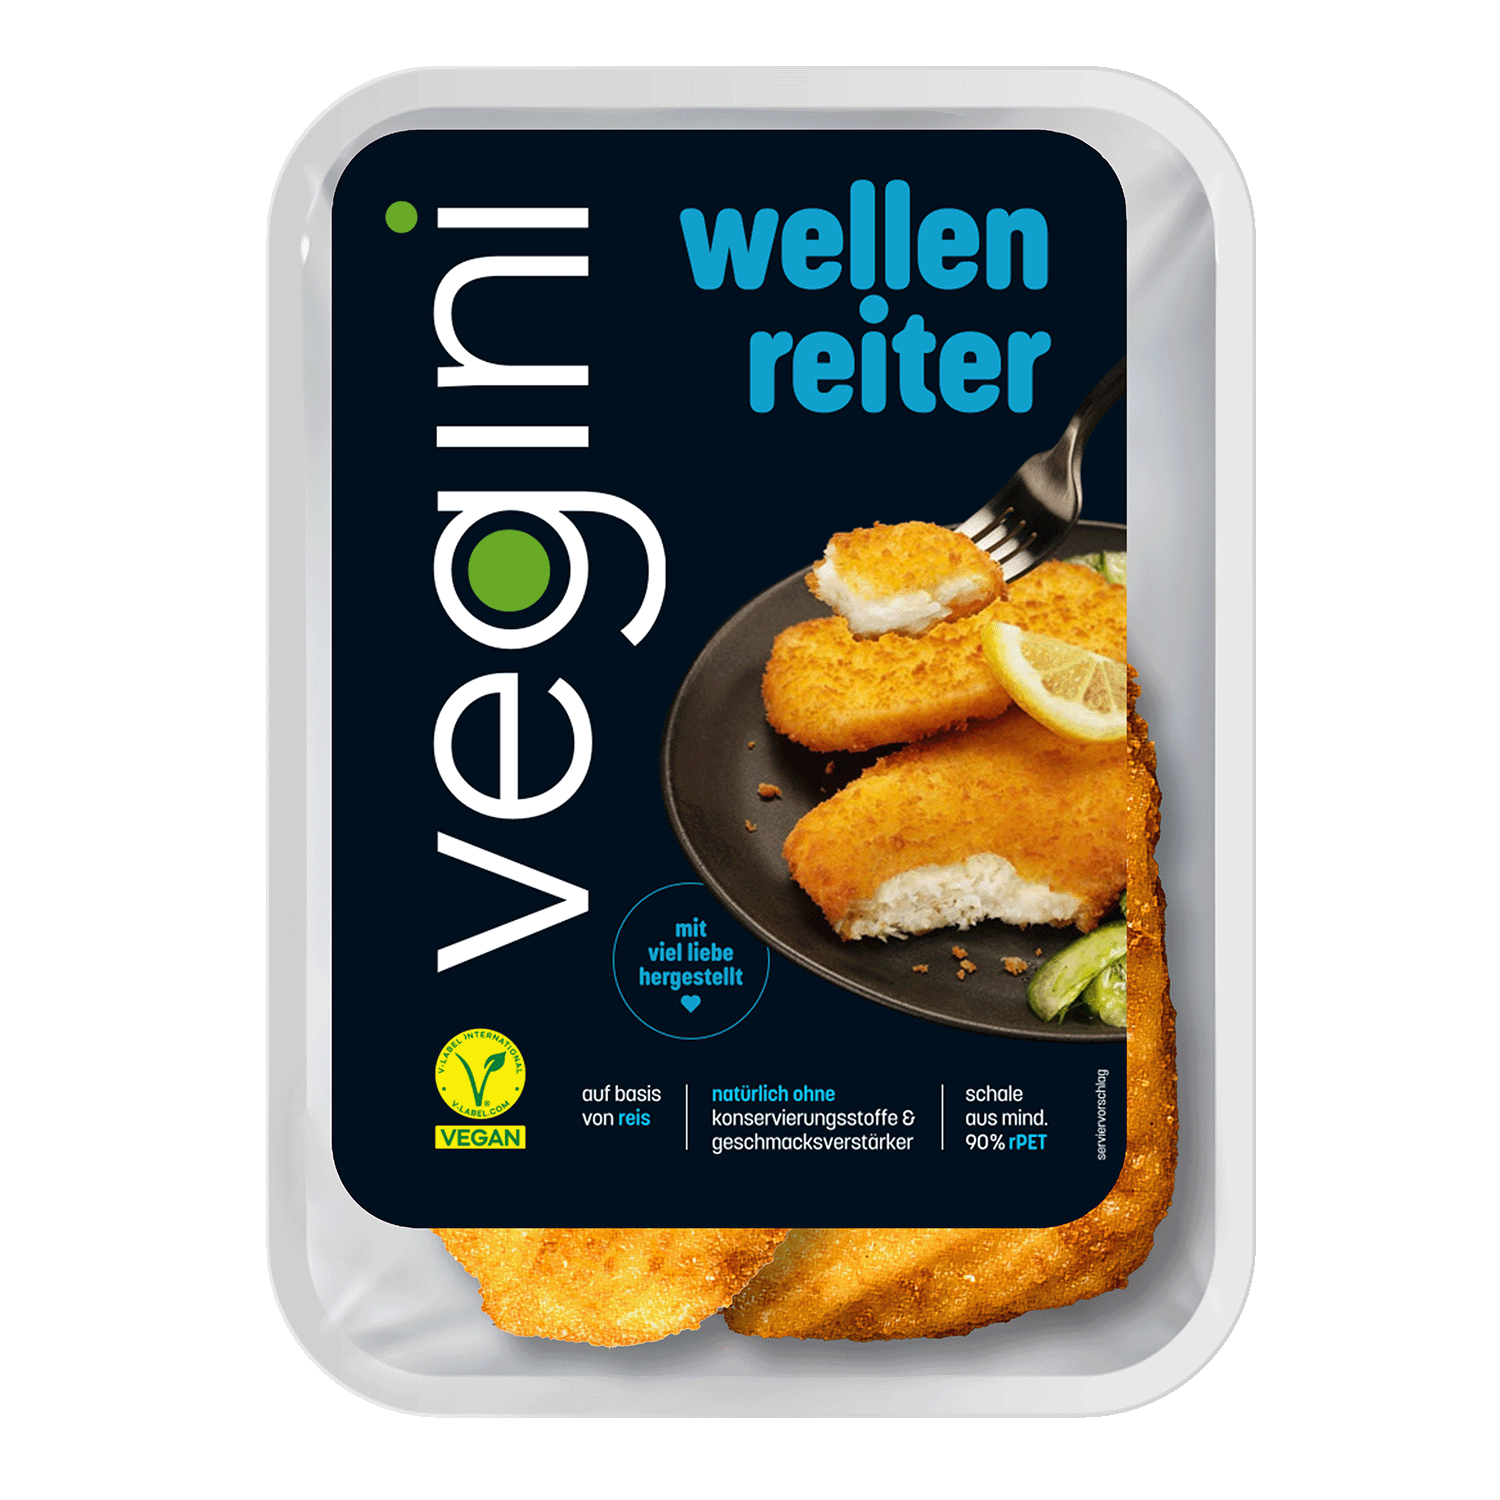 Vegane Wellenreiter, 140g